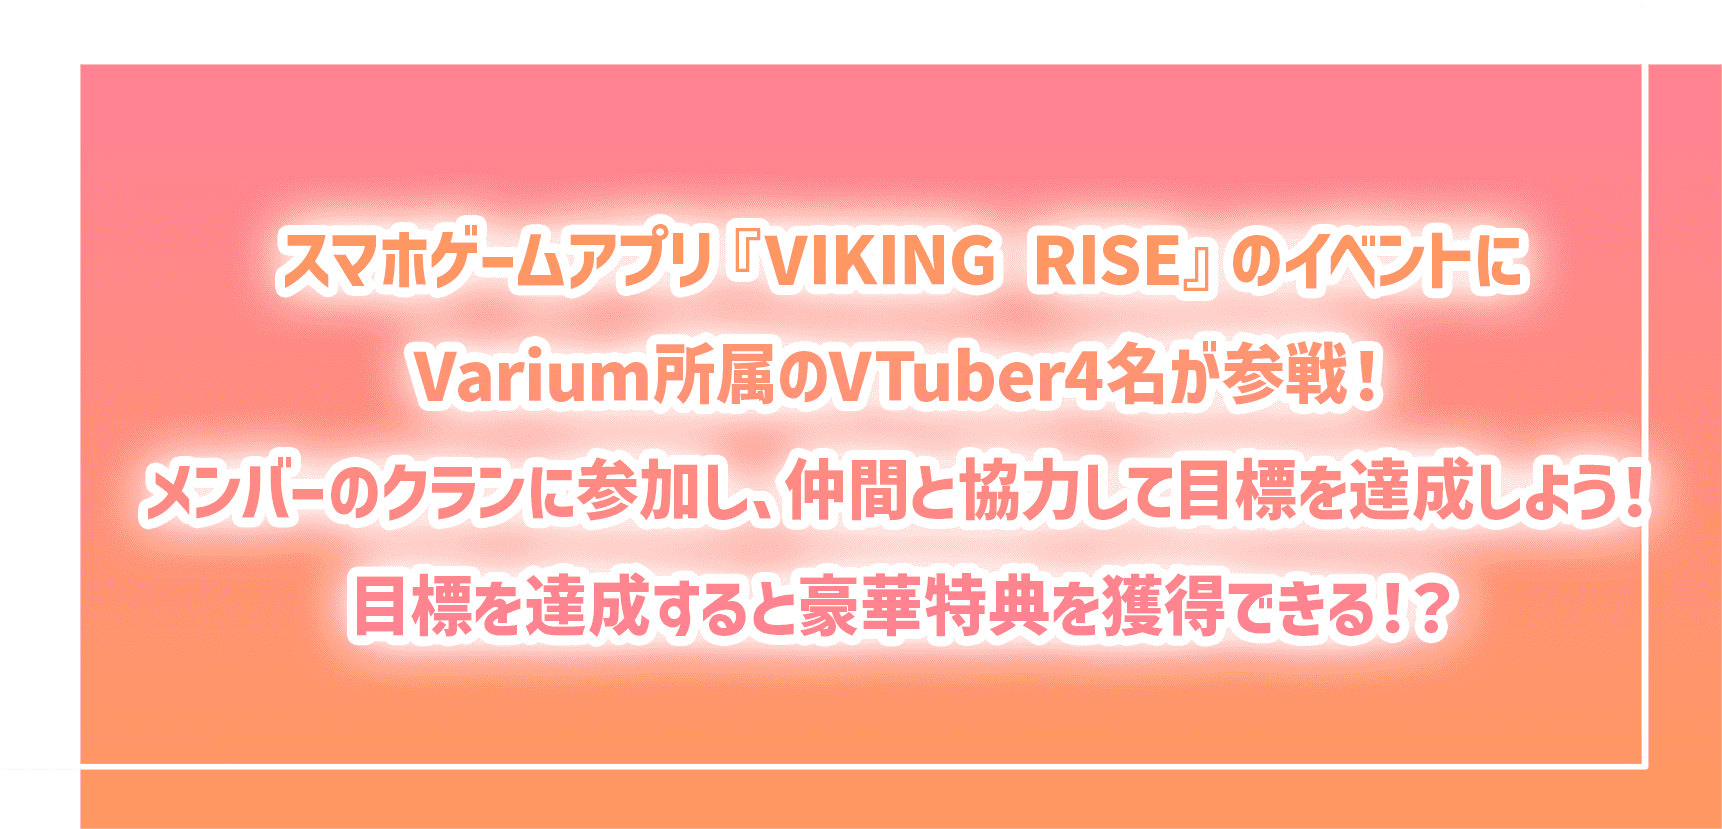 スマホゲームアプリ『VIKING RISE』のイベントにSTU48のメンバー10名が参戦！メンバーのクランに参加し、仲間と協力して目標を達成しよう！目標を達成すると特典を獲得できる！？